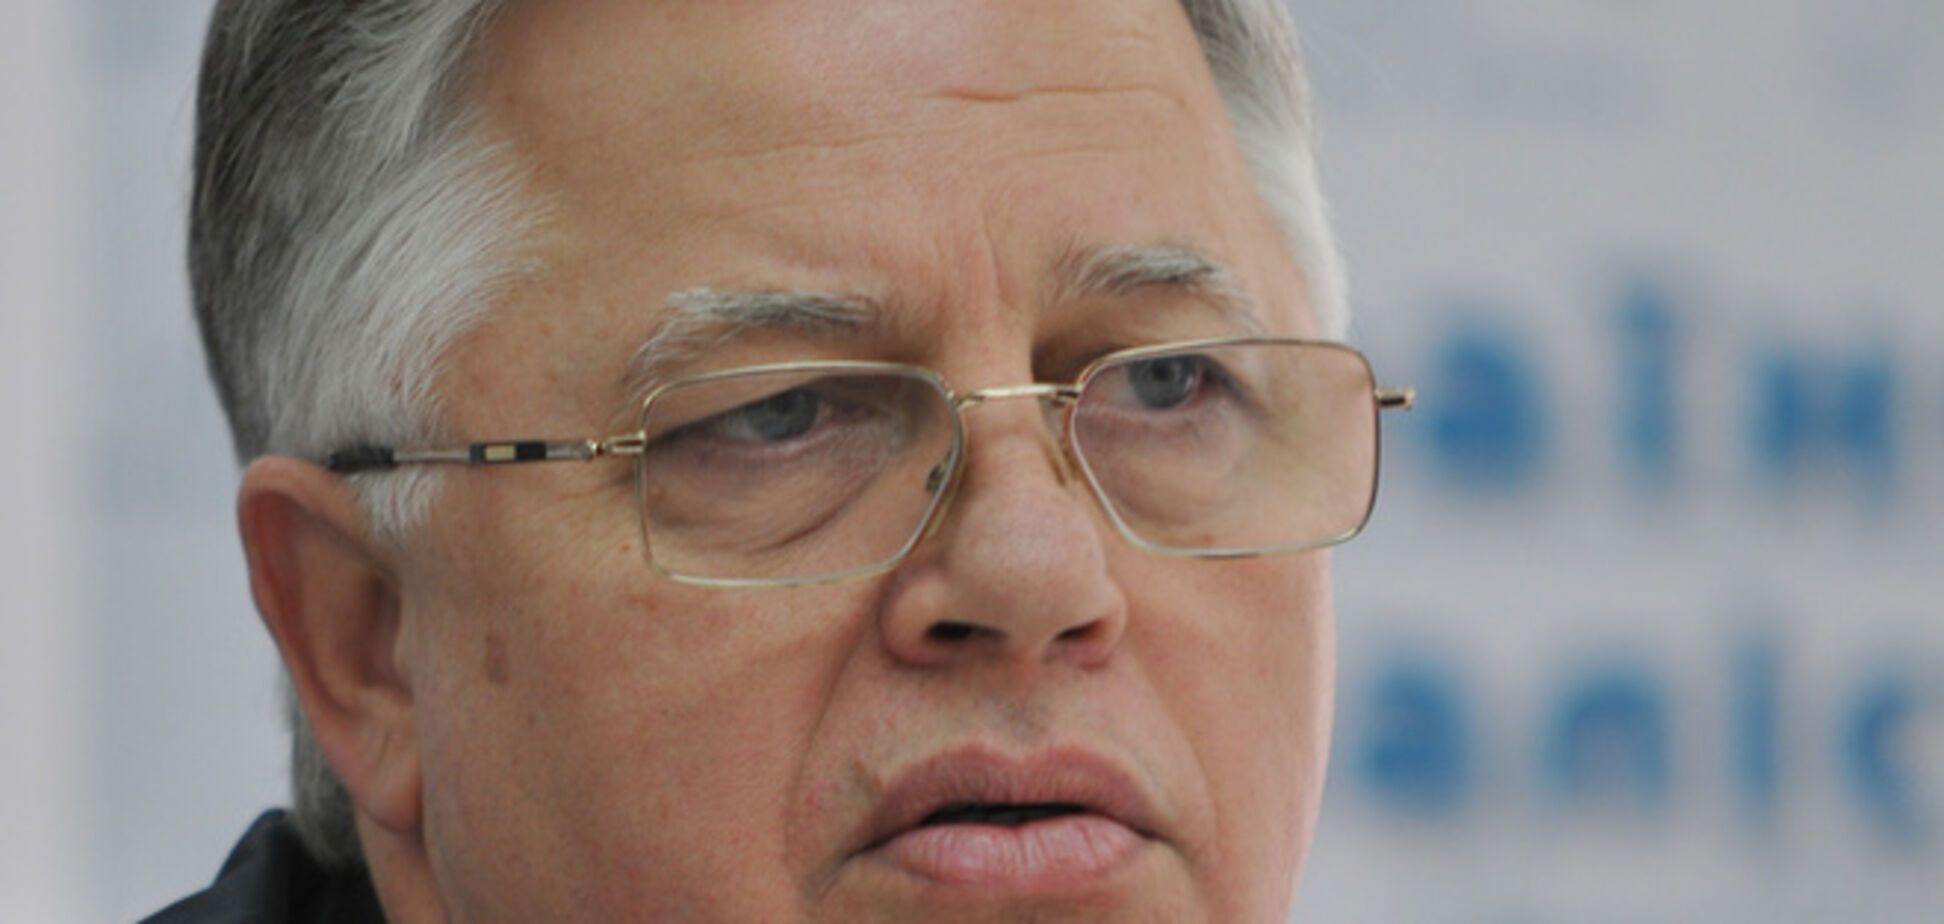 Експерти: Симоненко не закликав до порушення конституційного ладу